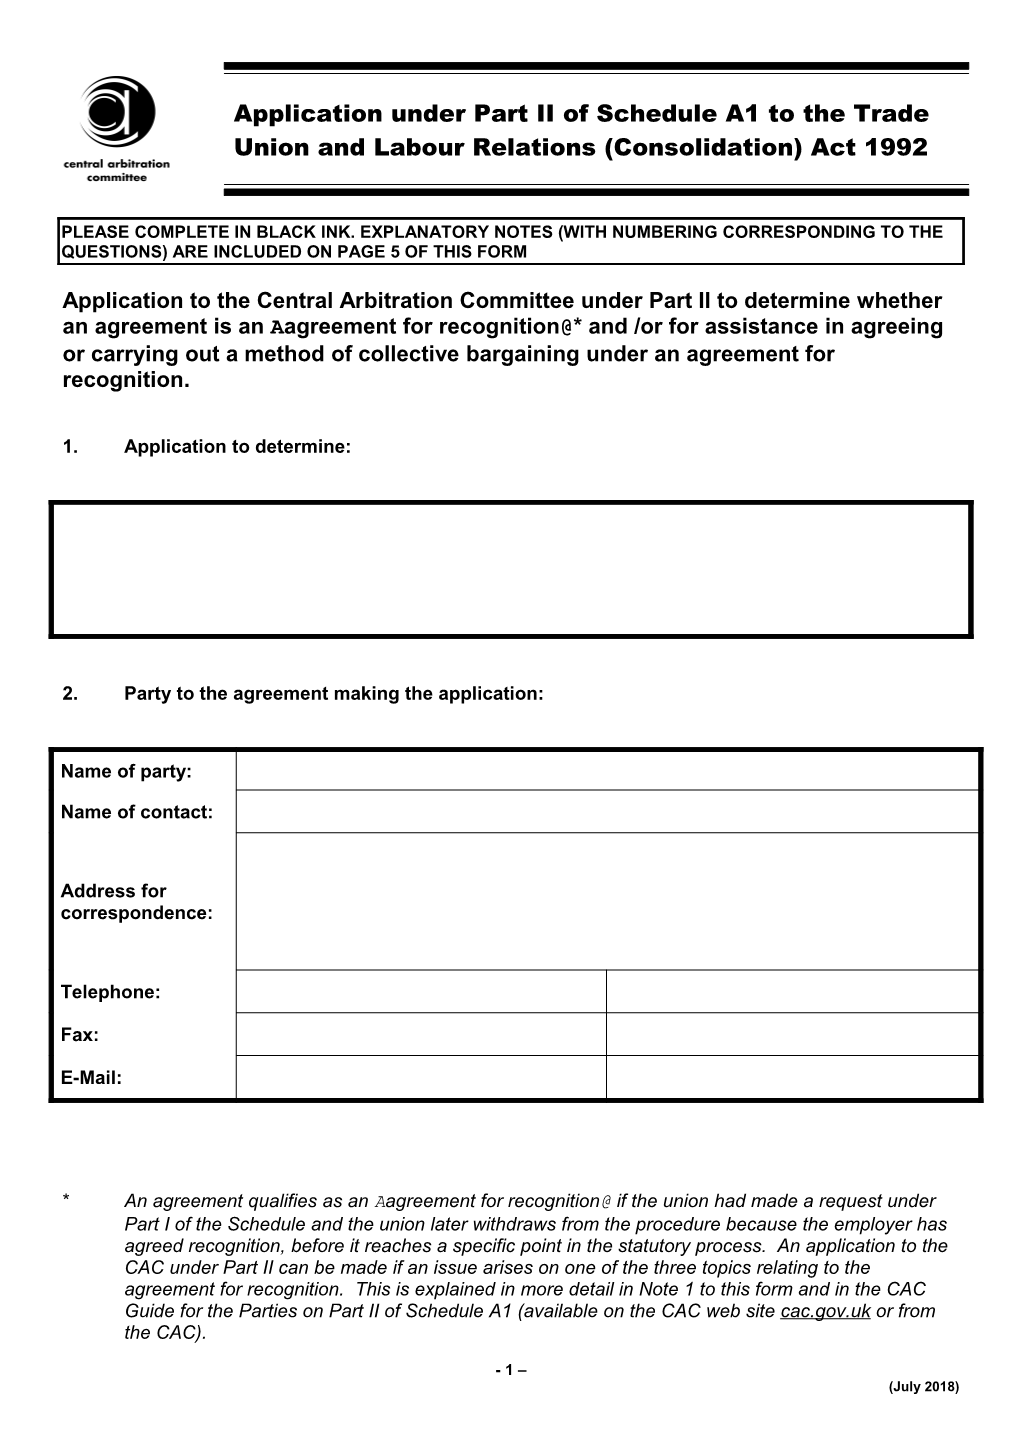 Application Form - Part II (April 2008)